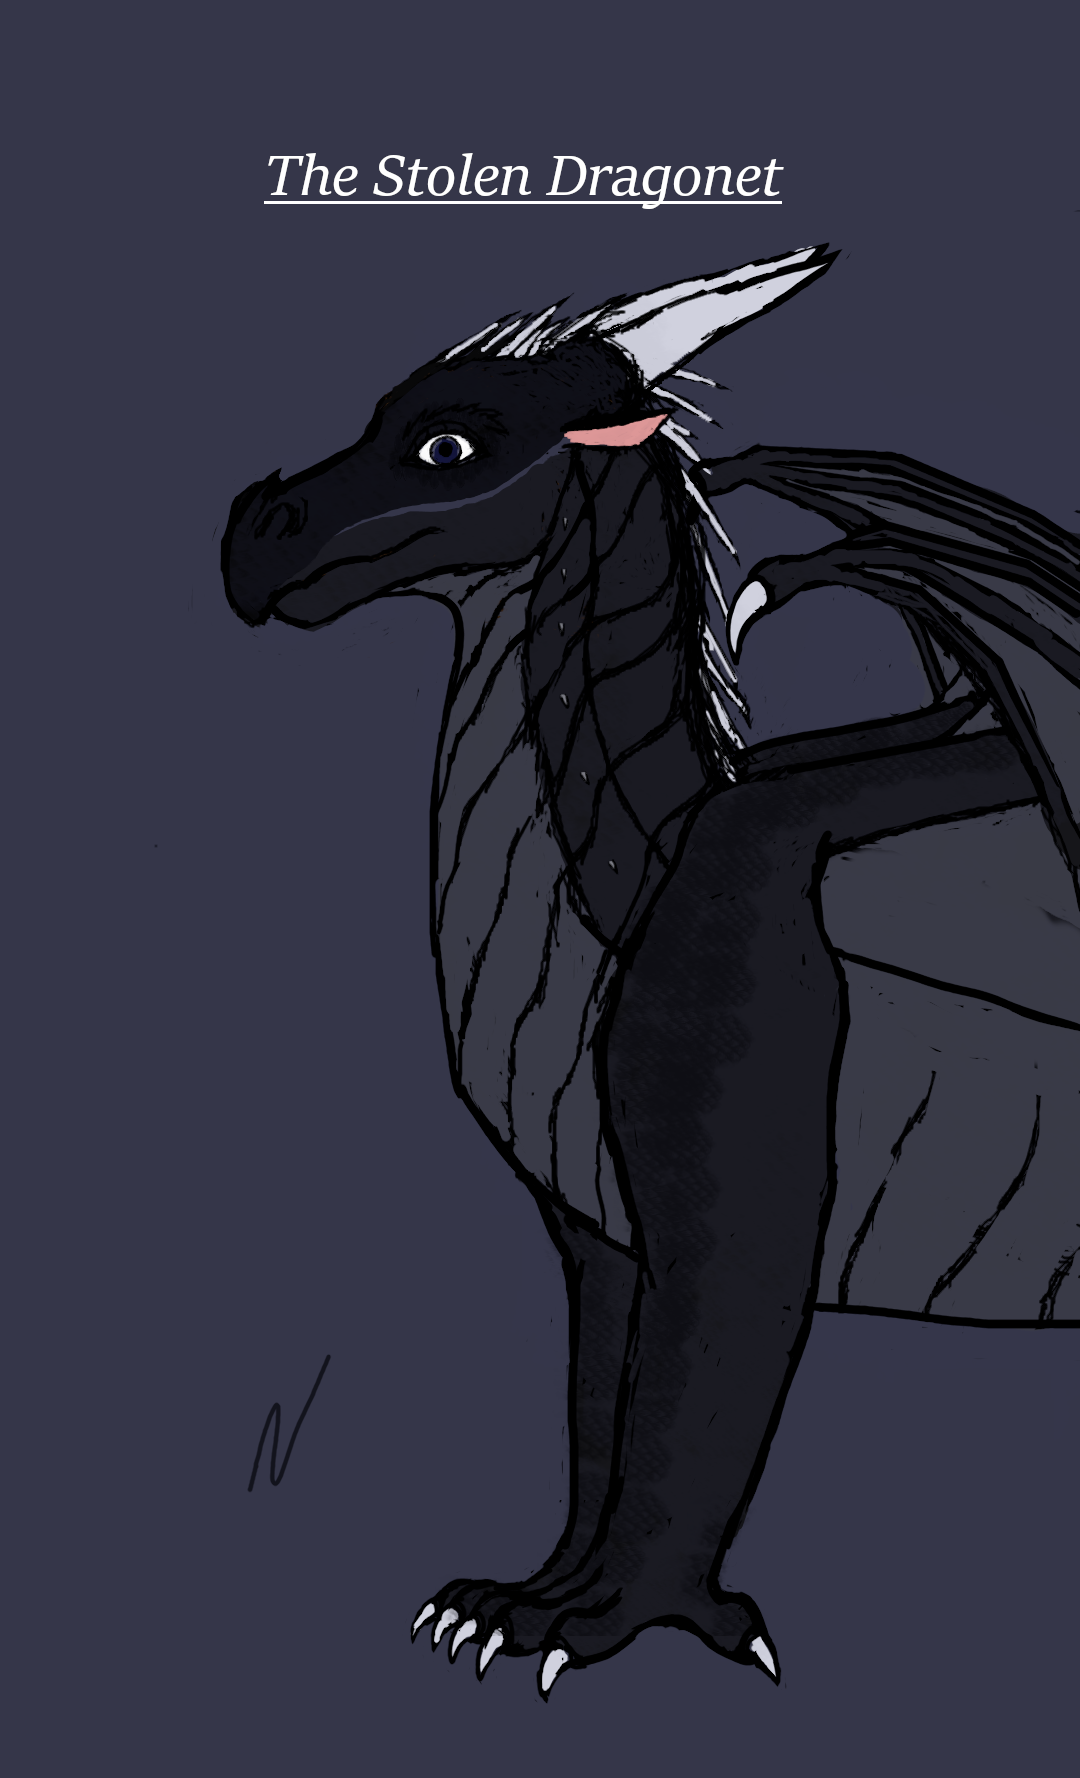 The Stolen Dragonet (fic), Wings of Fire Fanon Wiki